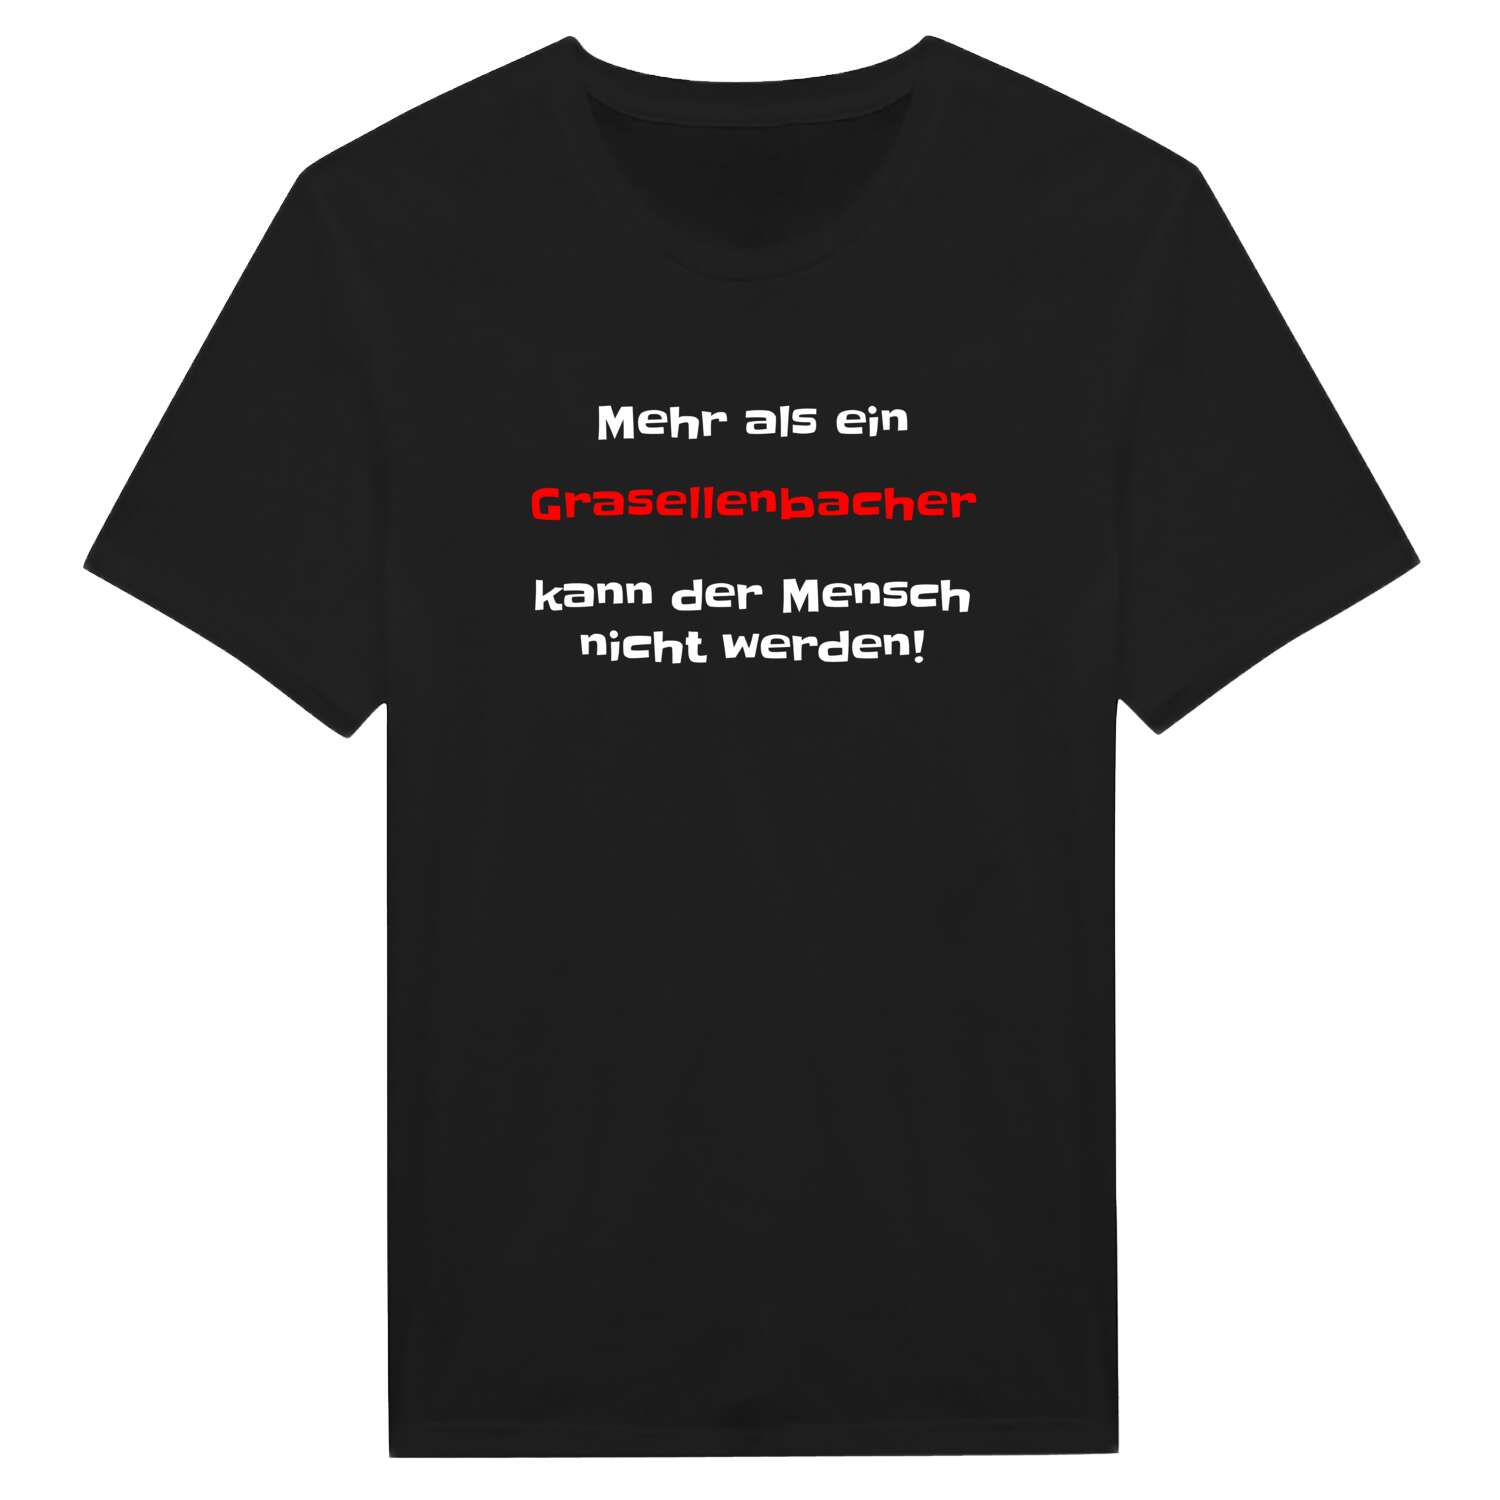 Grasellenbach T-Shirt »Mehr als ein«